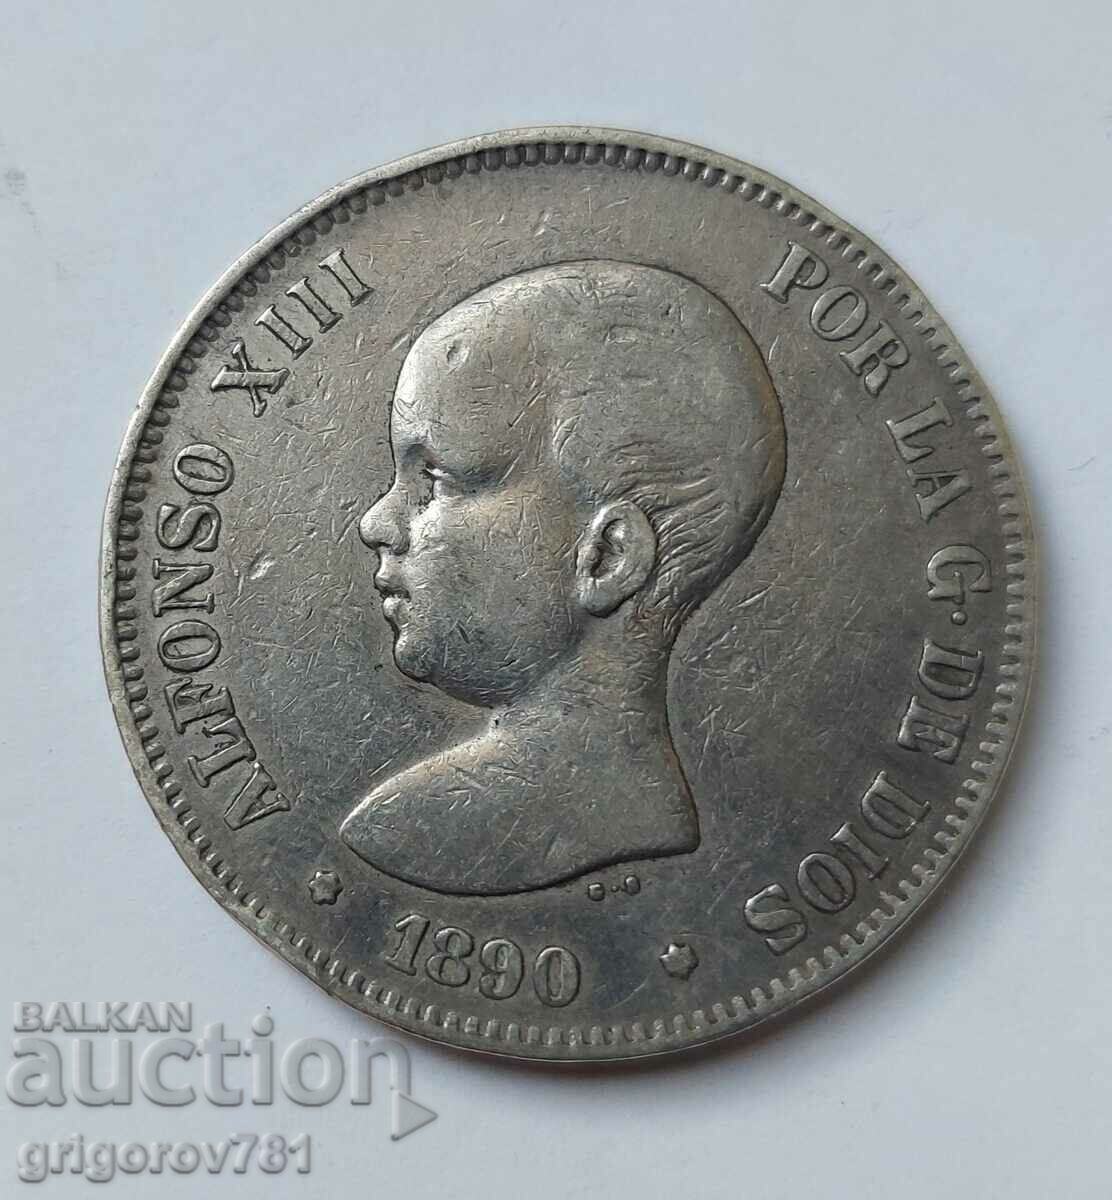 5 Pesetas Silver Spain 1890 - Silver Coin #193